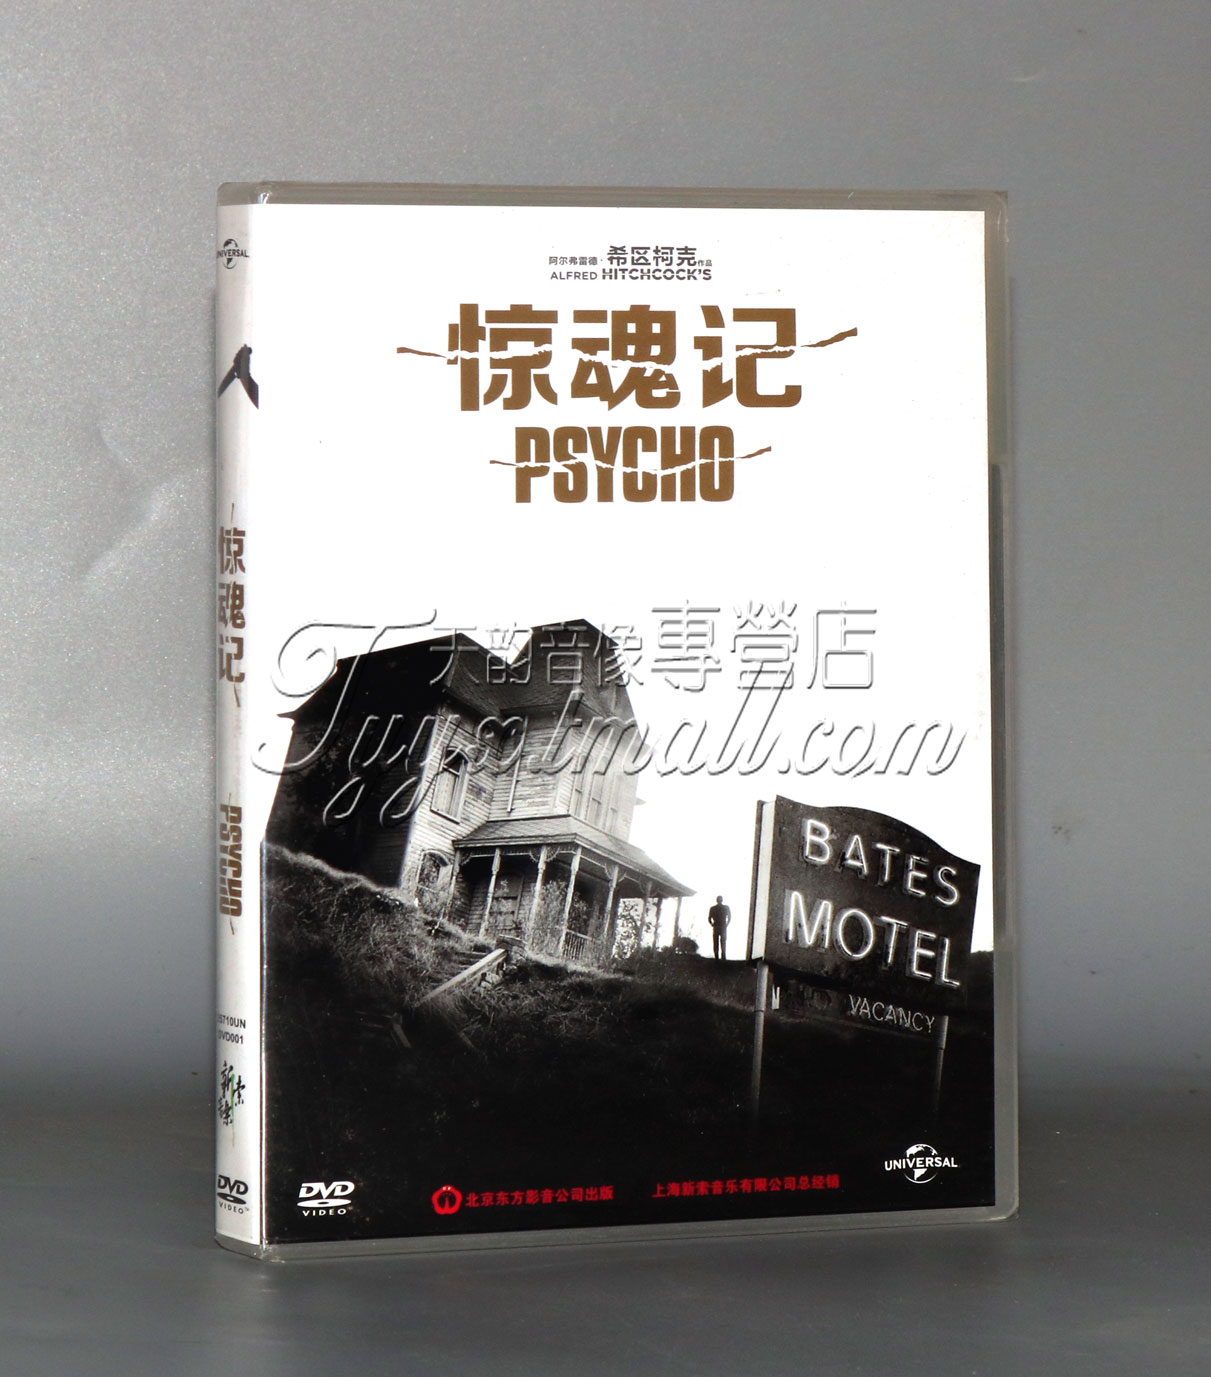 正版经典电影 惊魂记 Psycho 盒装1DVD 希区柯克导演 英语原音